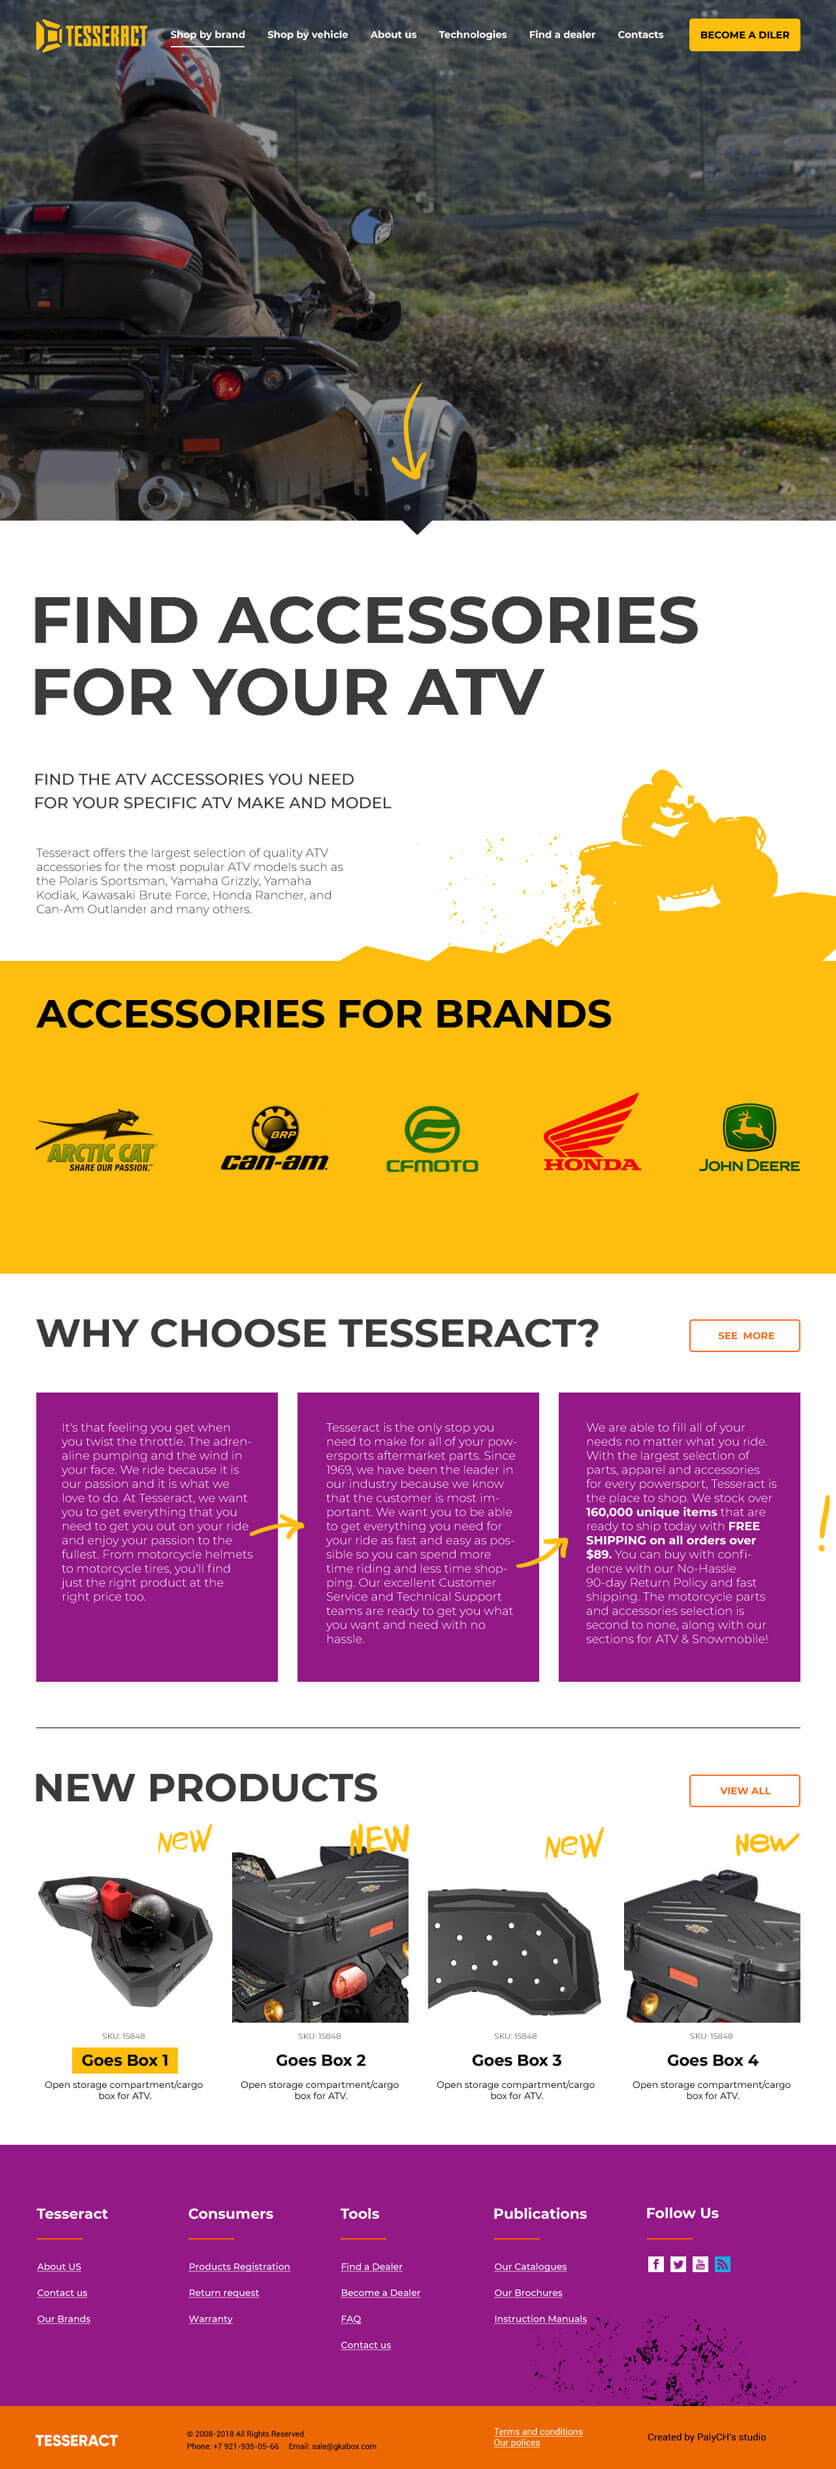 Дизайн главной страницы сайта бренда Tesseract